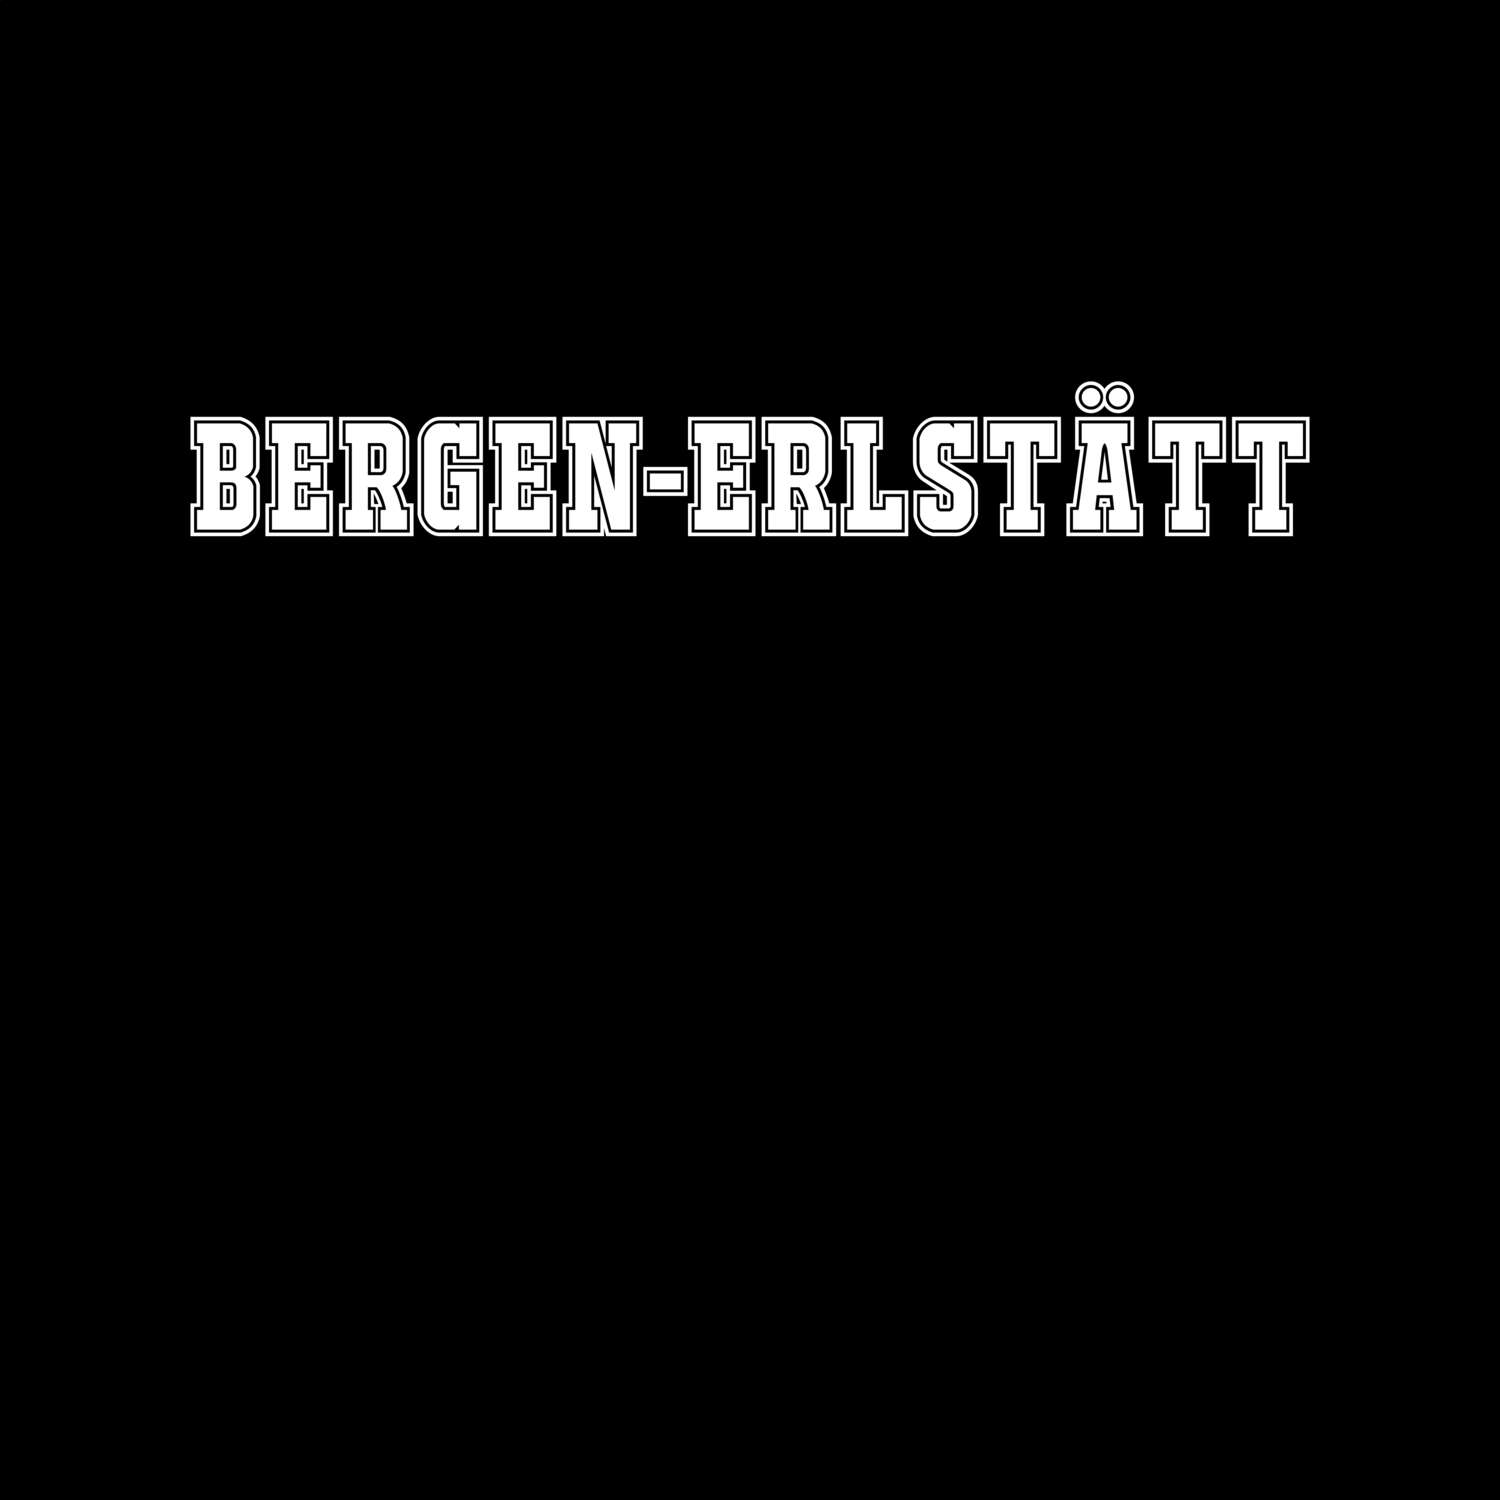 Bergen-Erlstätt T-Shirt »Classic«